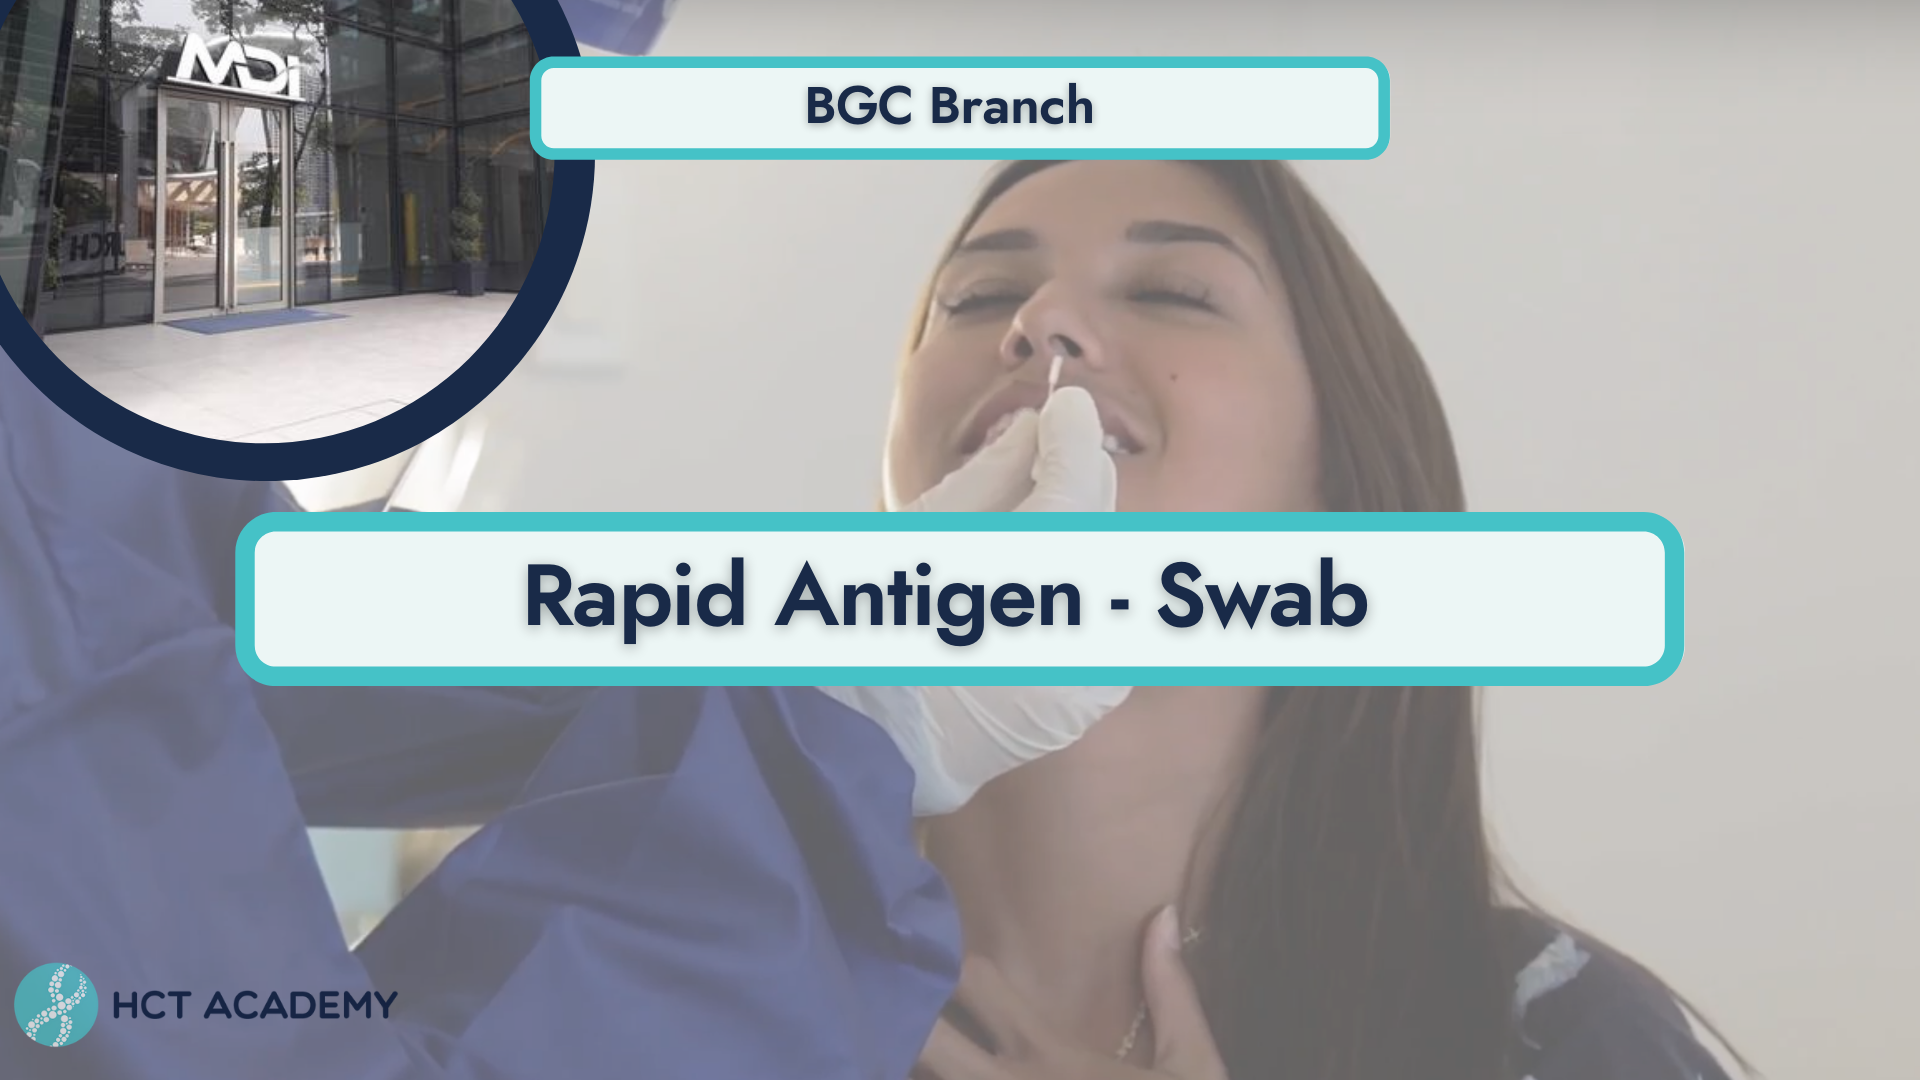 RAPID ANTIGEN TEST - SWAB | Uptown BGC Branch